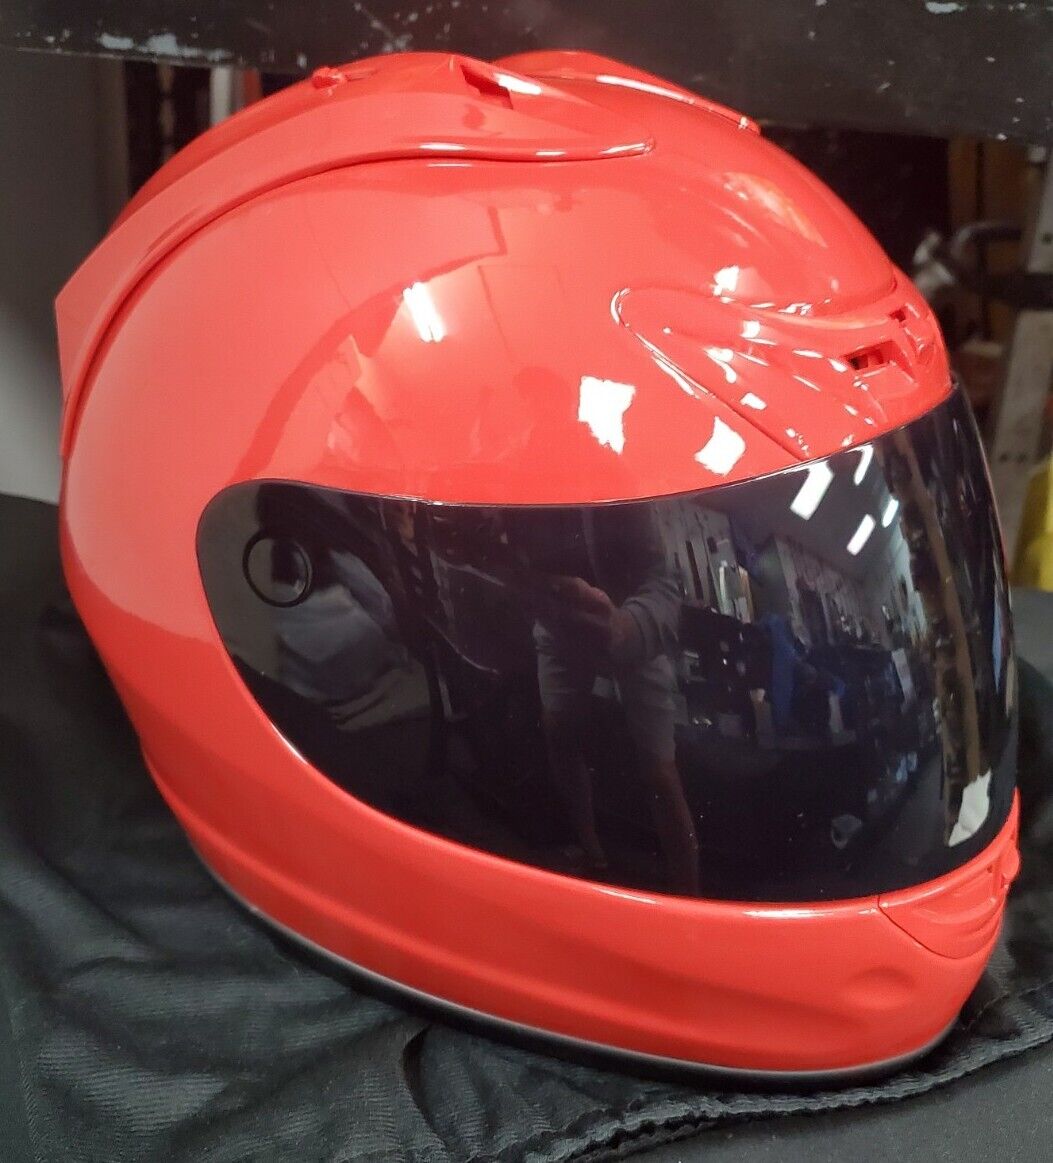 1Storm New Large Motorcycle Bike Full Face Helmet HTT901F w OEM Bag - RED